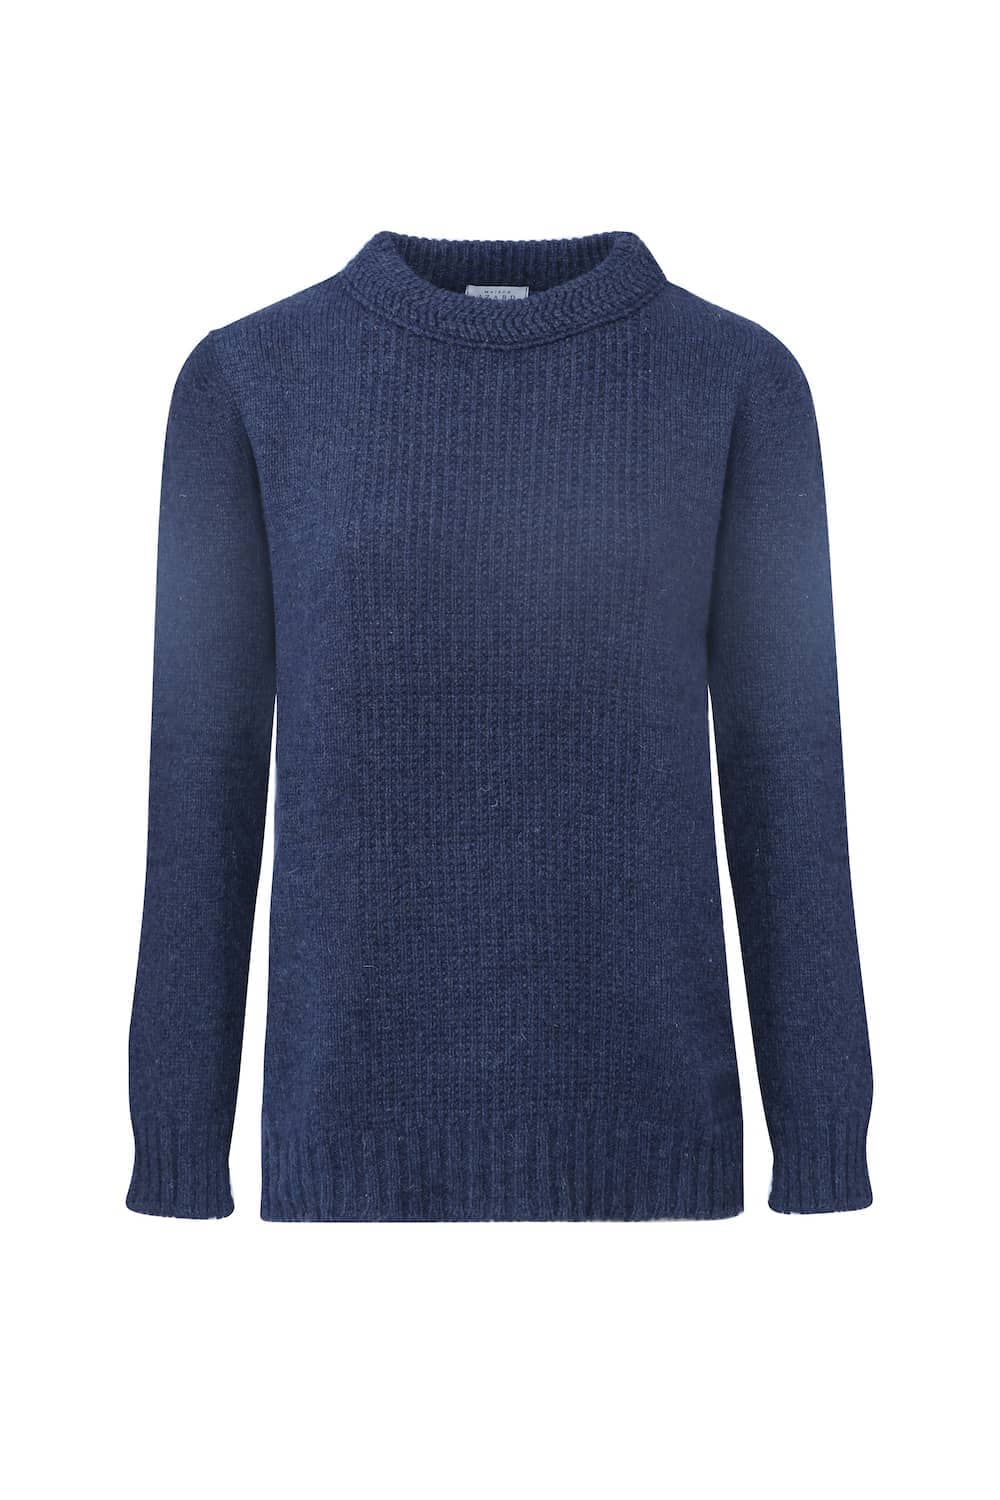 pull femme jersey éthique et responsable bleu, en laine des Pyrénées et coton recyclé, made in France, maison izard